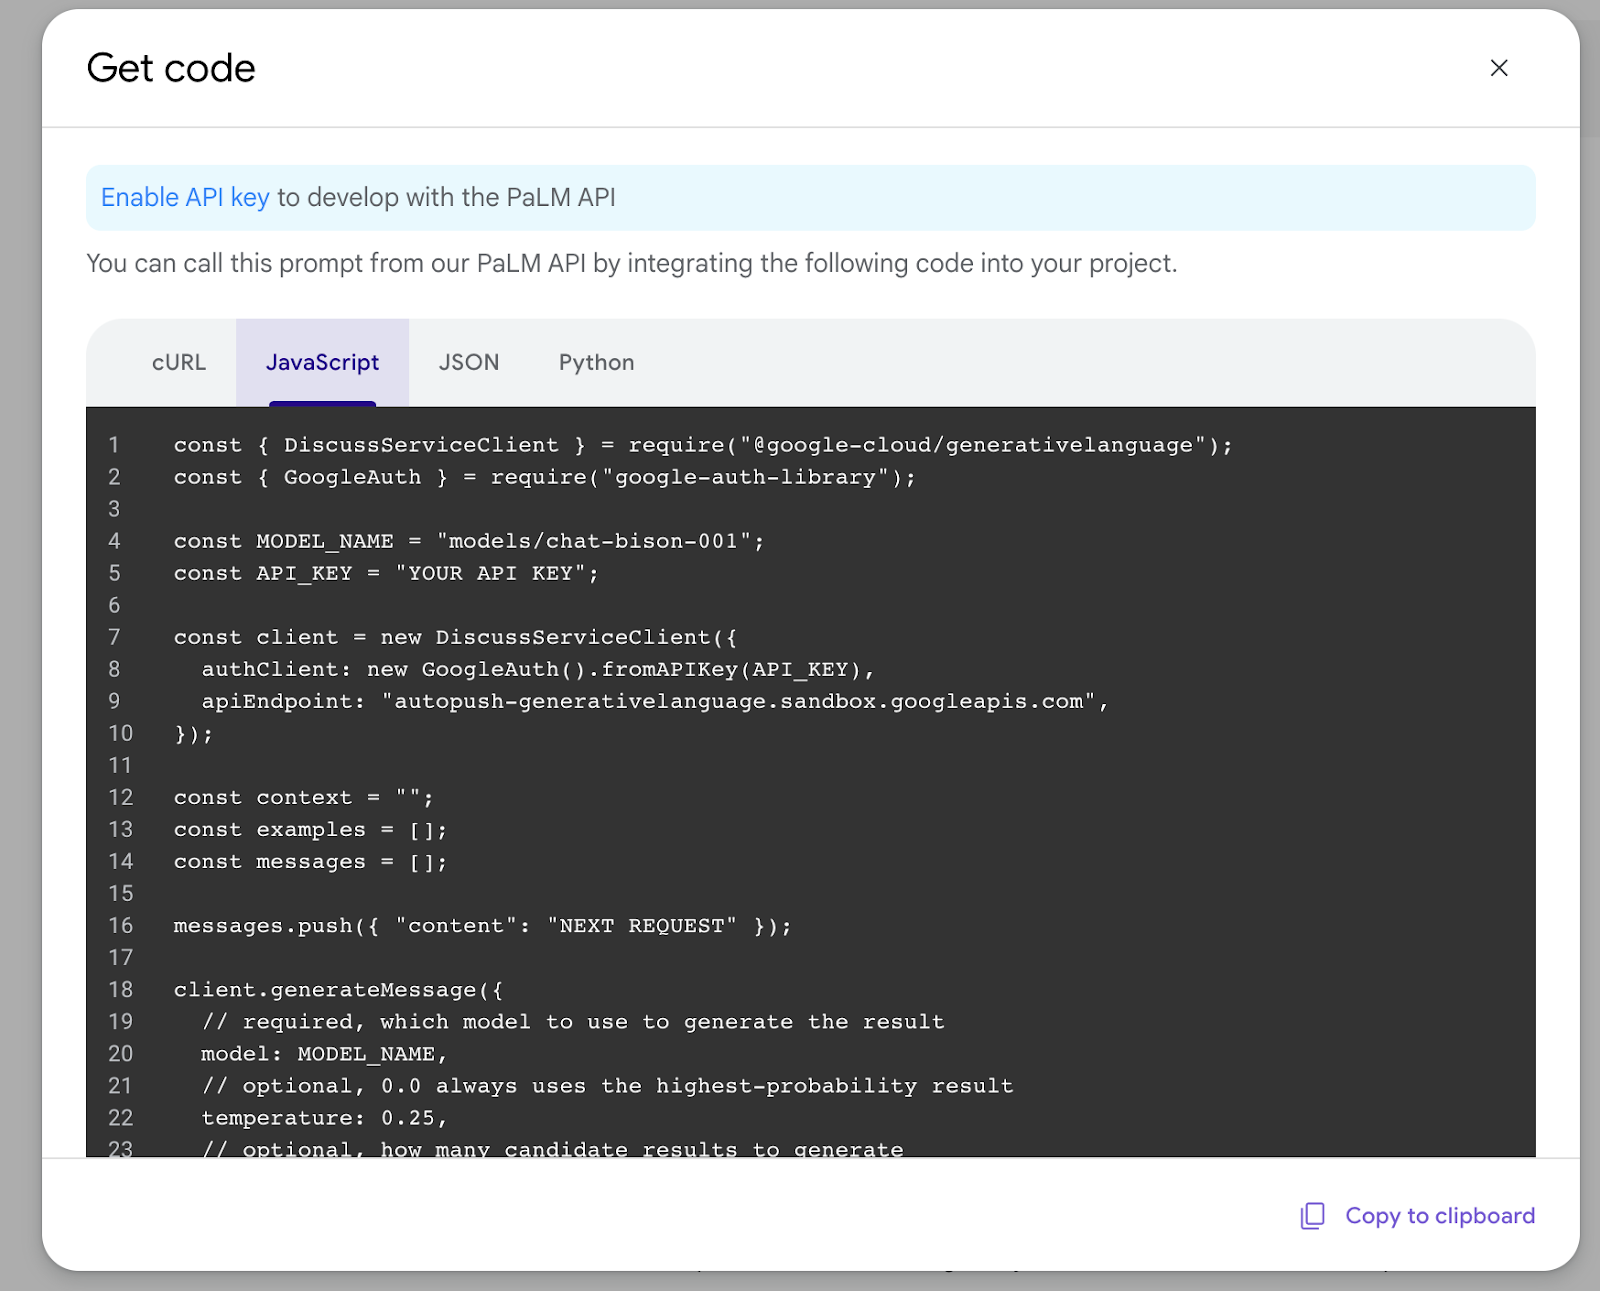 תיבת דו-שיח שבה מוצג קוד שנוצר על ידי MakerSuite. המשתמשים יכולים לבחור אם להשתמש ב-cURL, או בספריות JavaScript או python, או לאחזר את פרטי ההנחיה כ-JSON.